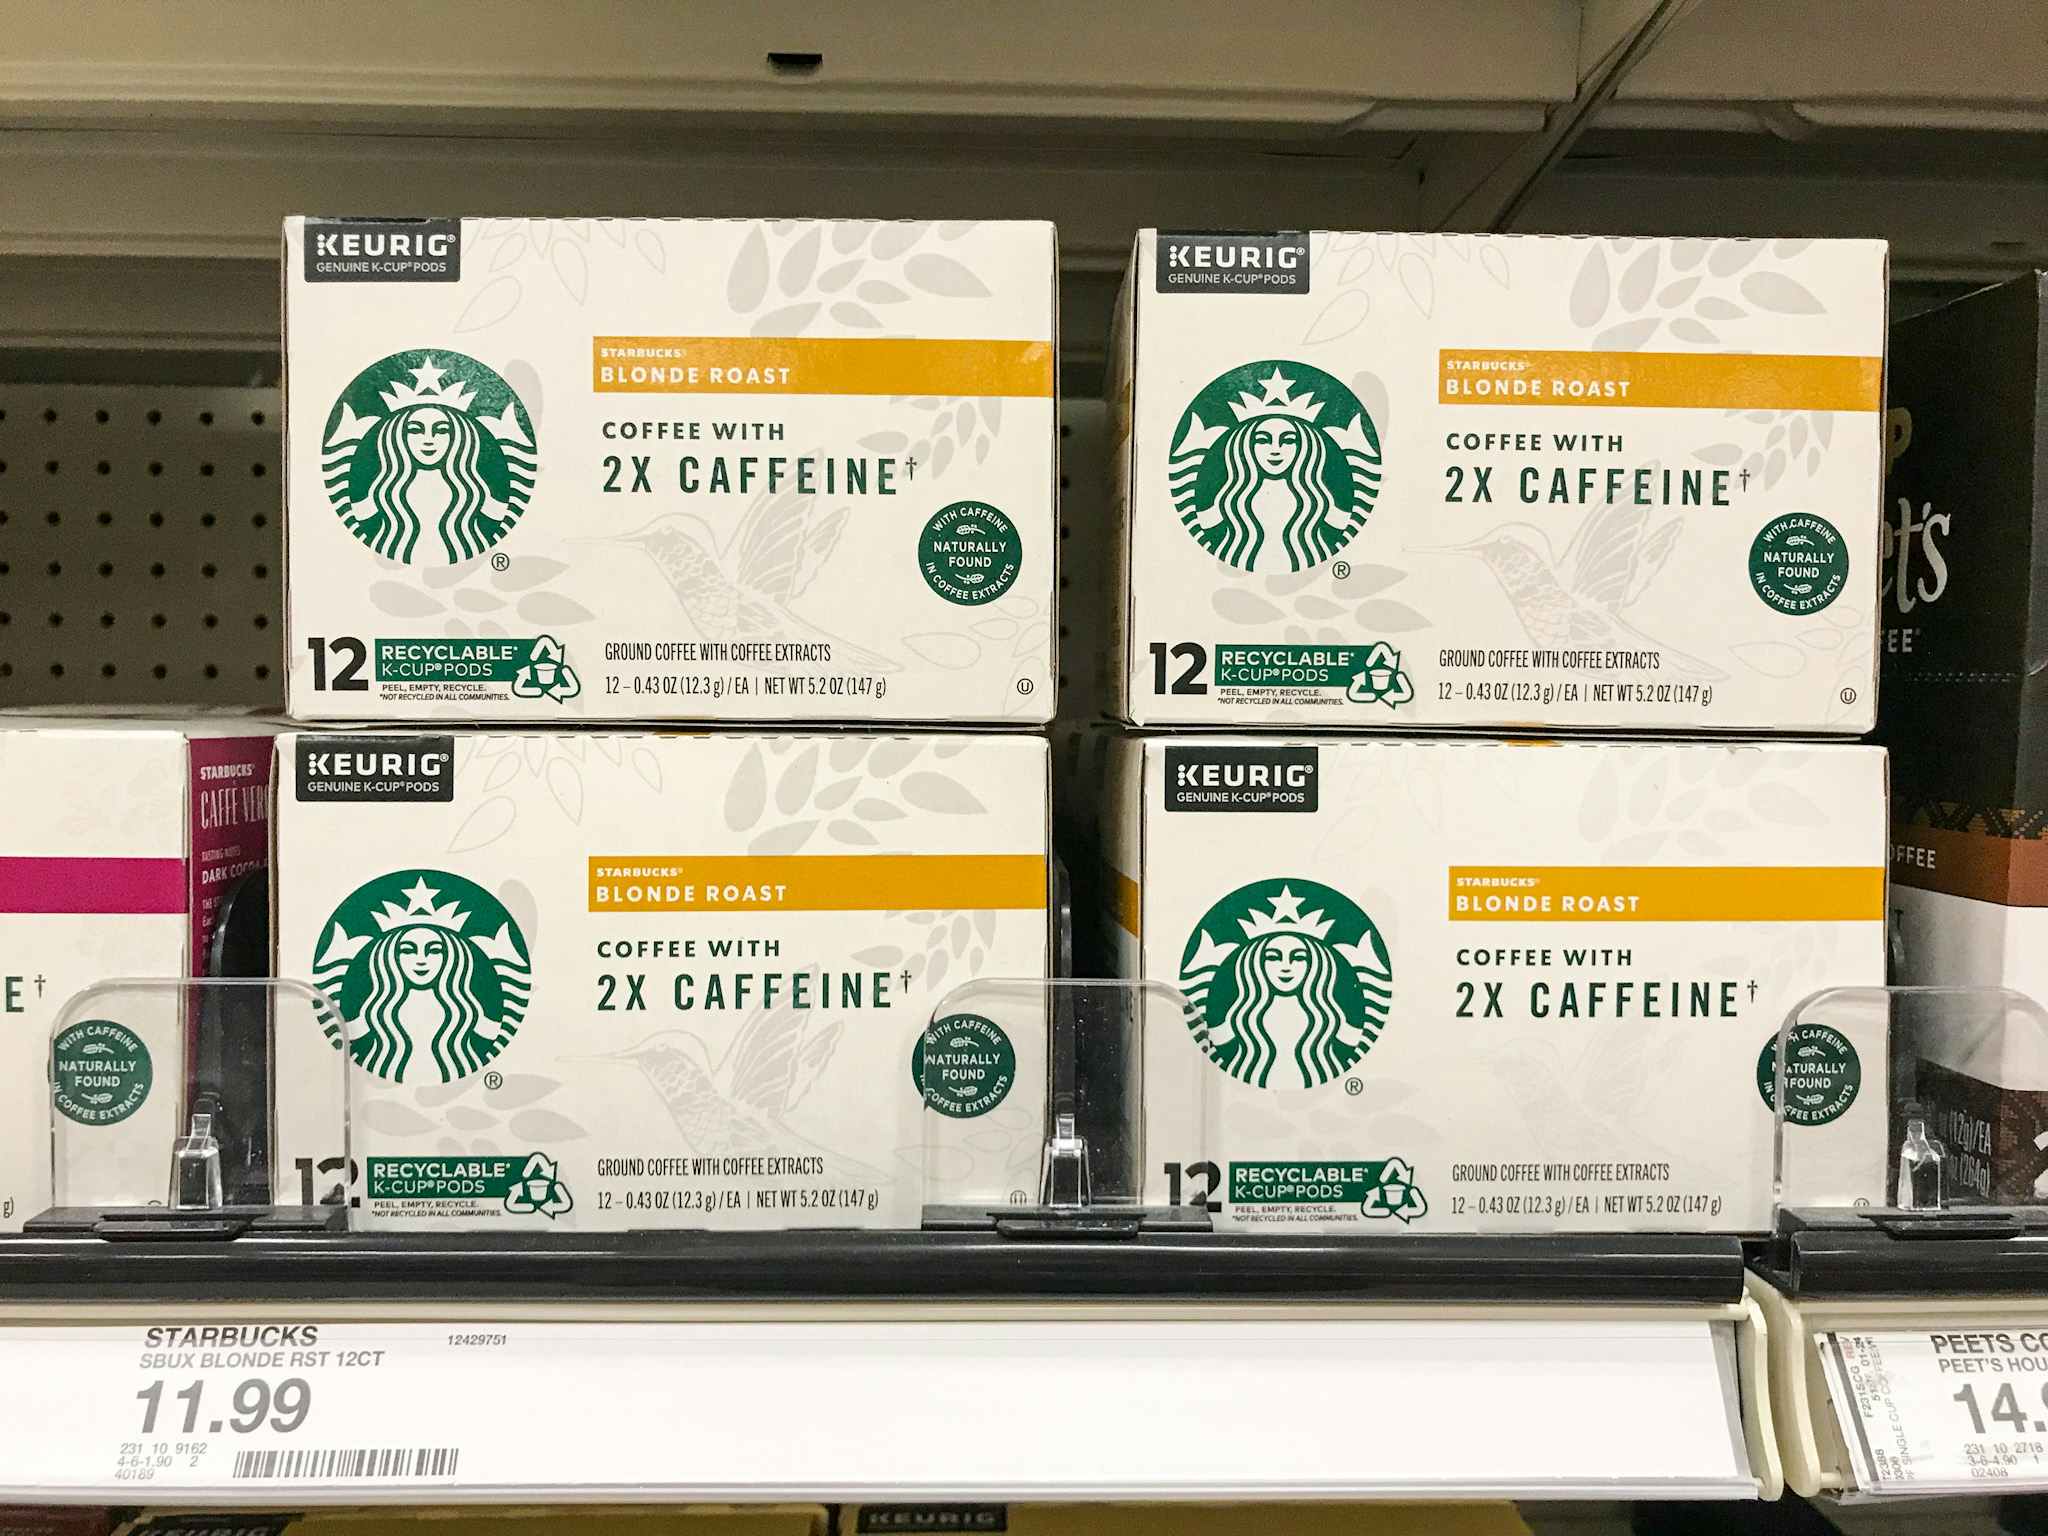 startbucks k-cup pods with 2x caffeine on a target shelf